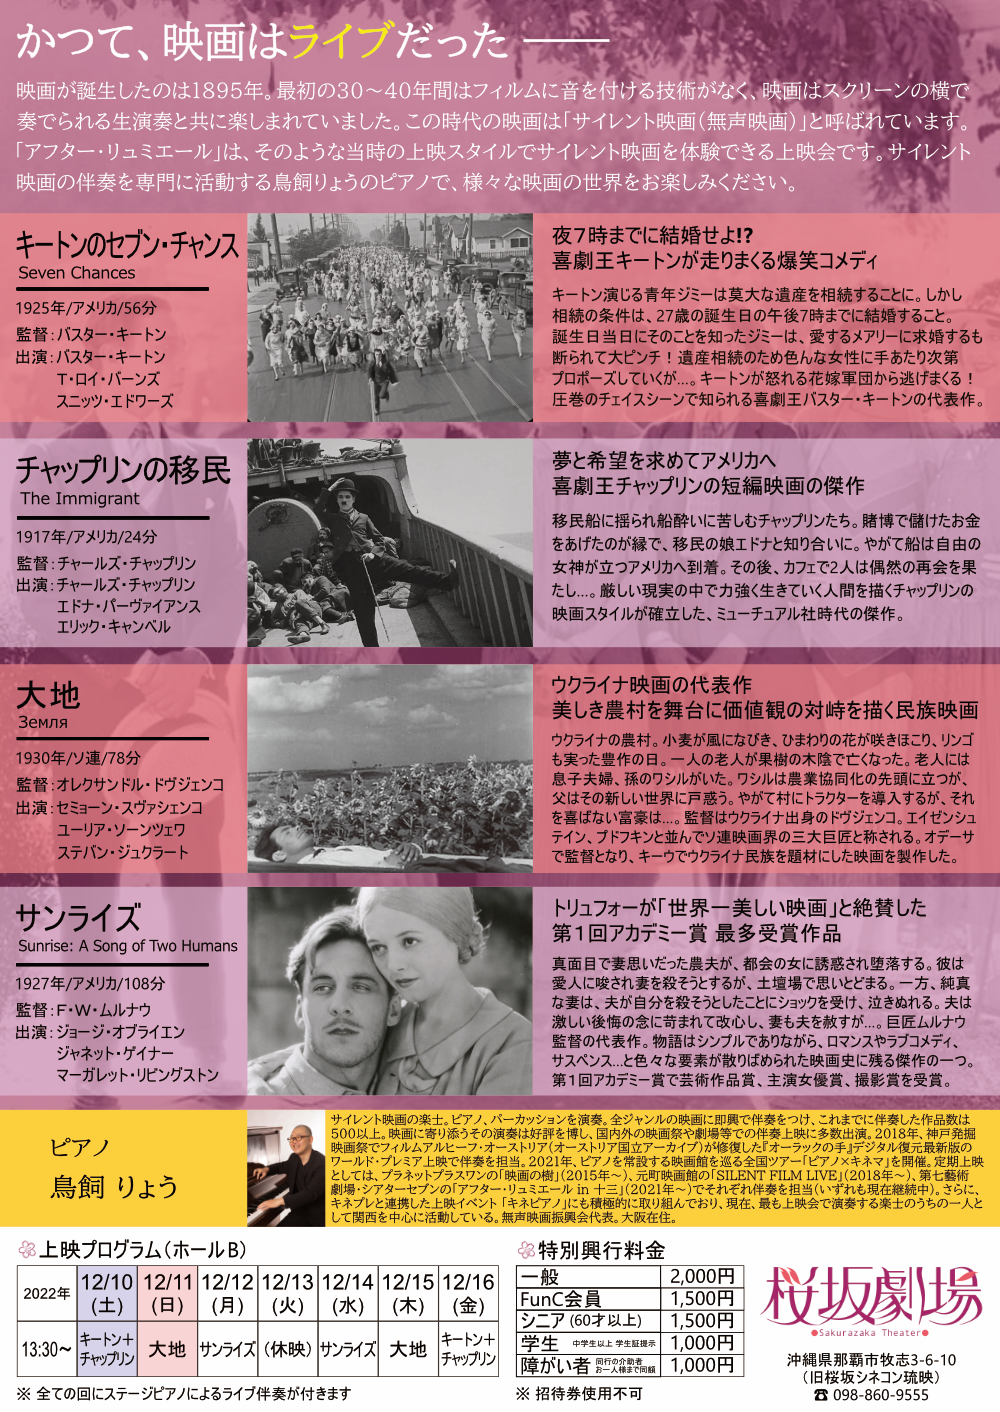 ピアノ伴奏で観るサイレント映画「アフター・リュミエール in 桜坂劇場 vol.1」の画像